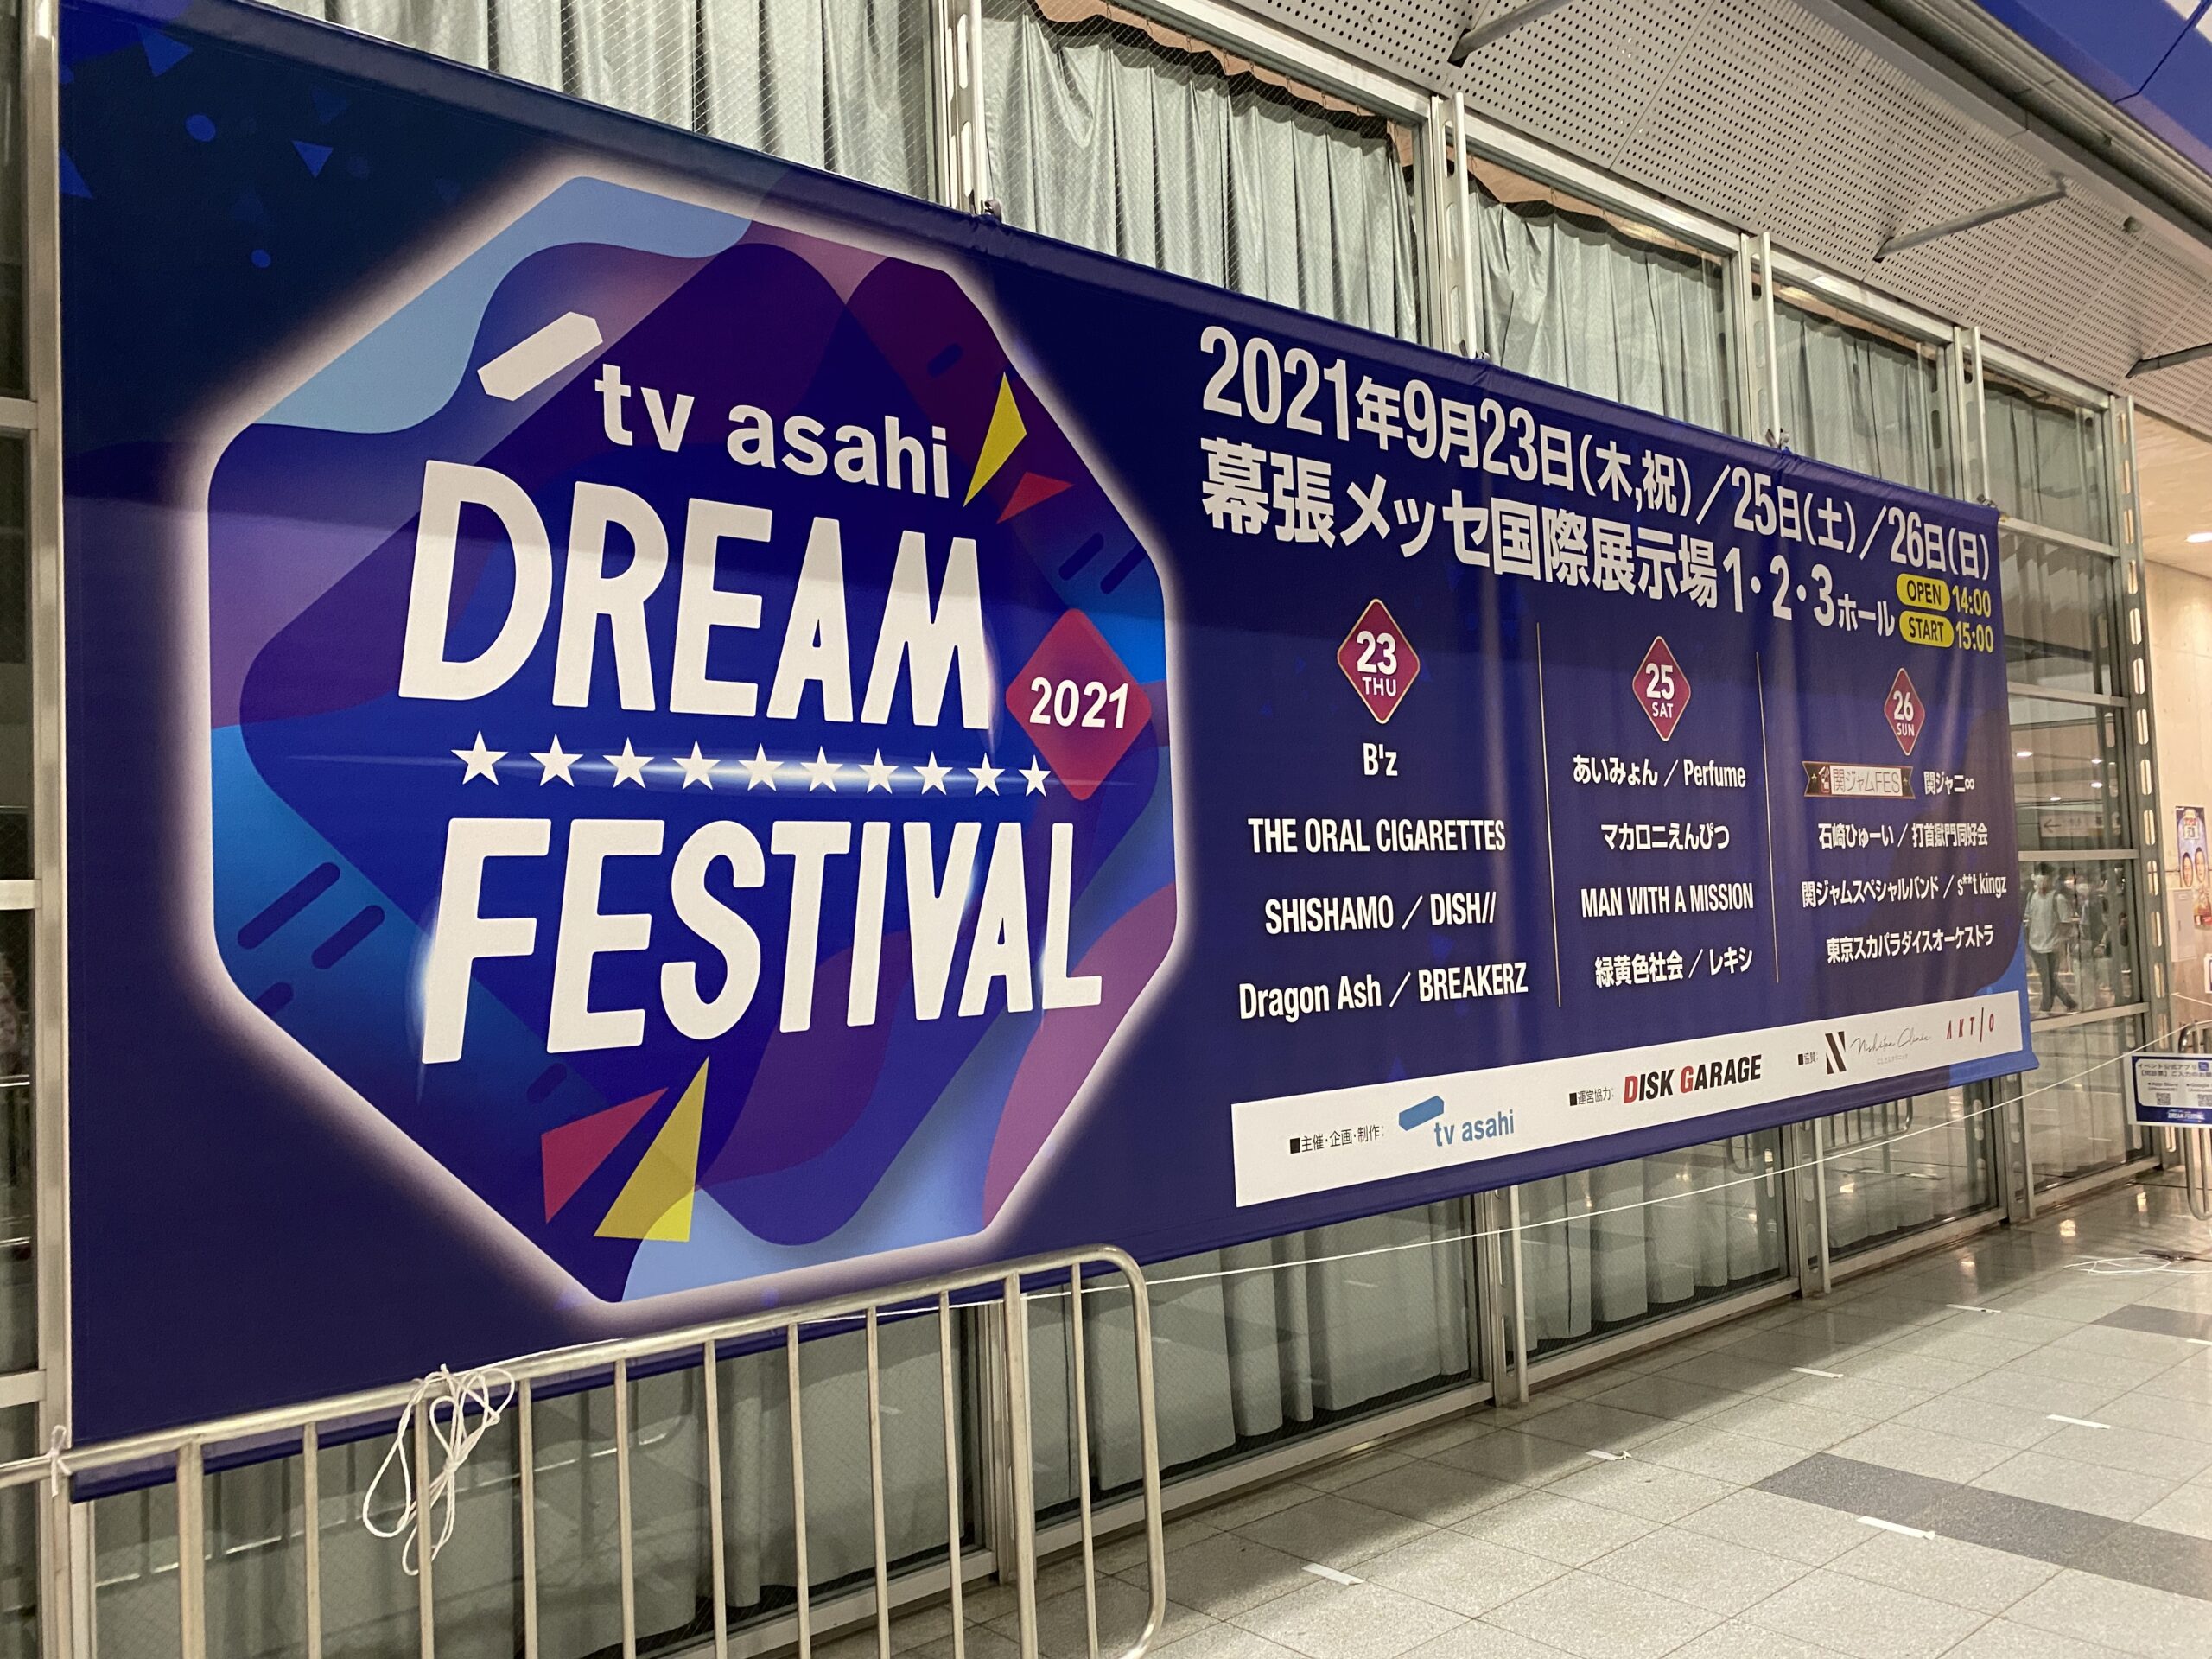 『テレビ朝日ドリームフェスティバル2021』の会場付近で撮影した特製パネルの写真